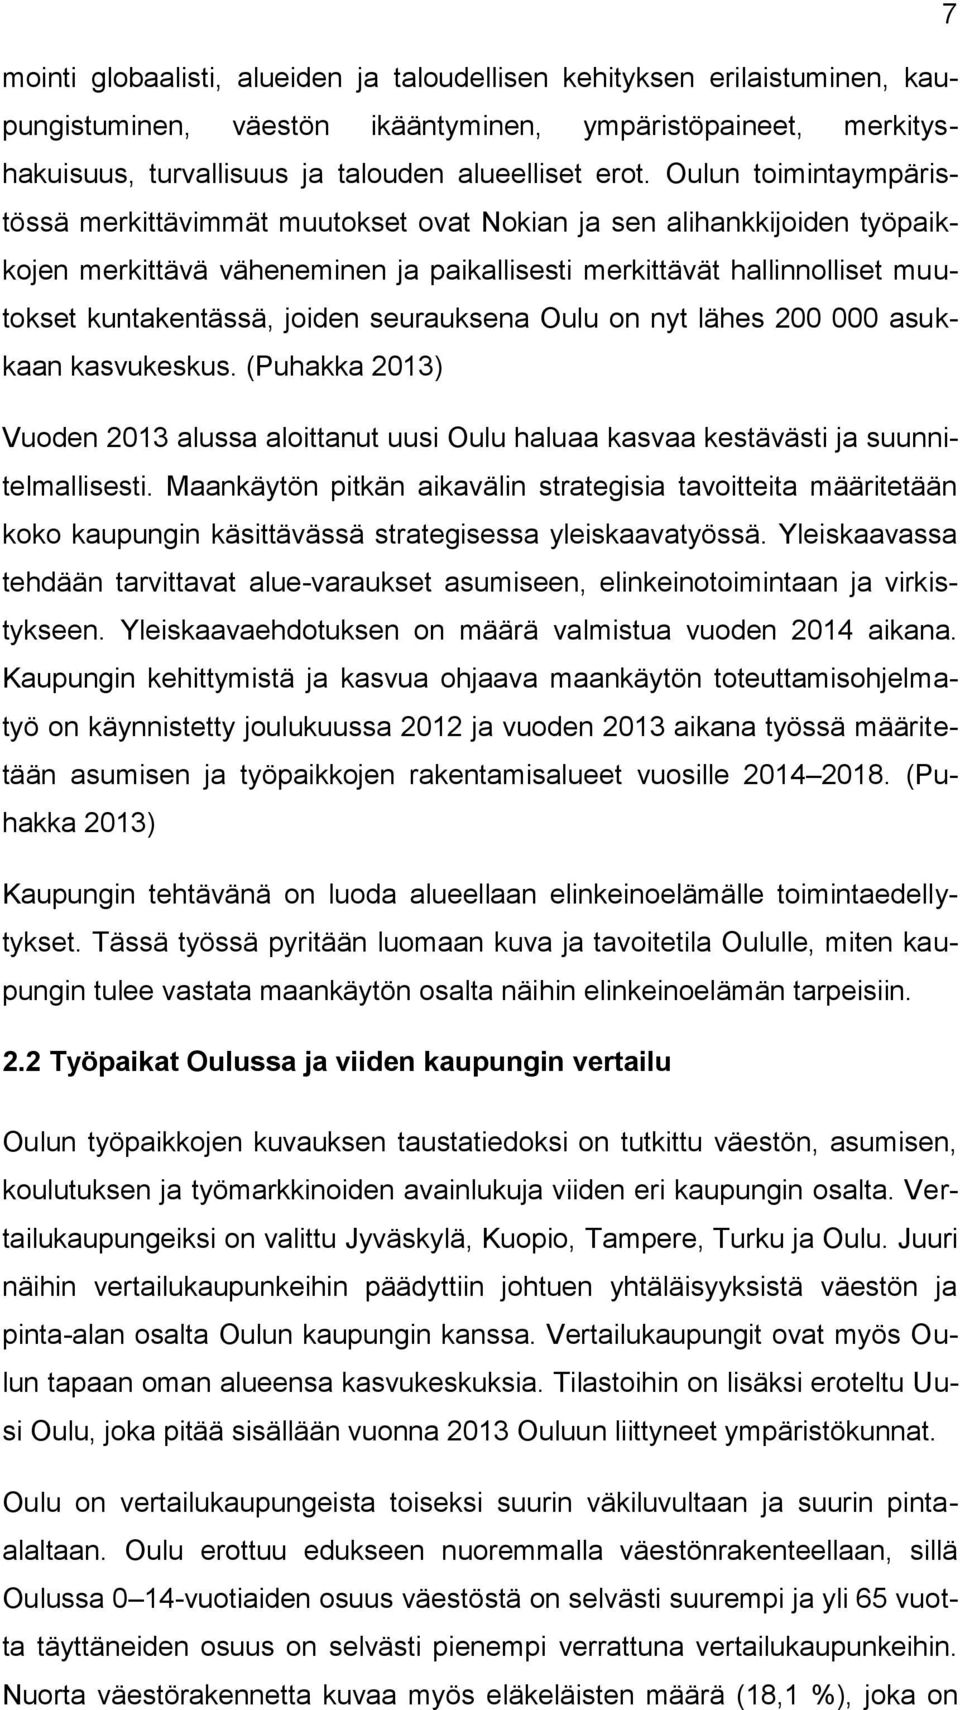 seurauksena Oulu on nyt lähes 200 000 asukkaan kasvukeskus. (Puhakka 2013) Vuoden 2013 alussa aloittanut uusi Oulu haluaa kasvaa kestävästi ja suunnitelmallisesti.